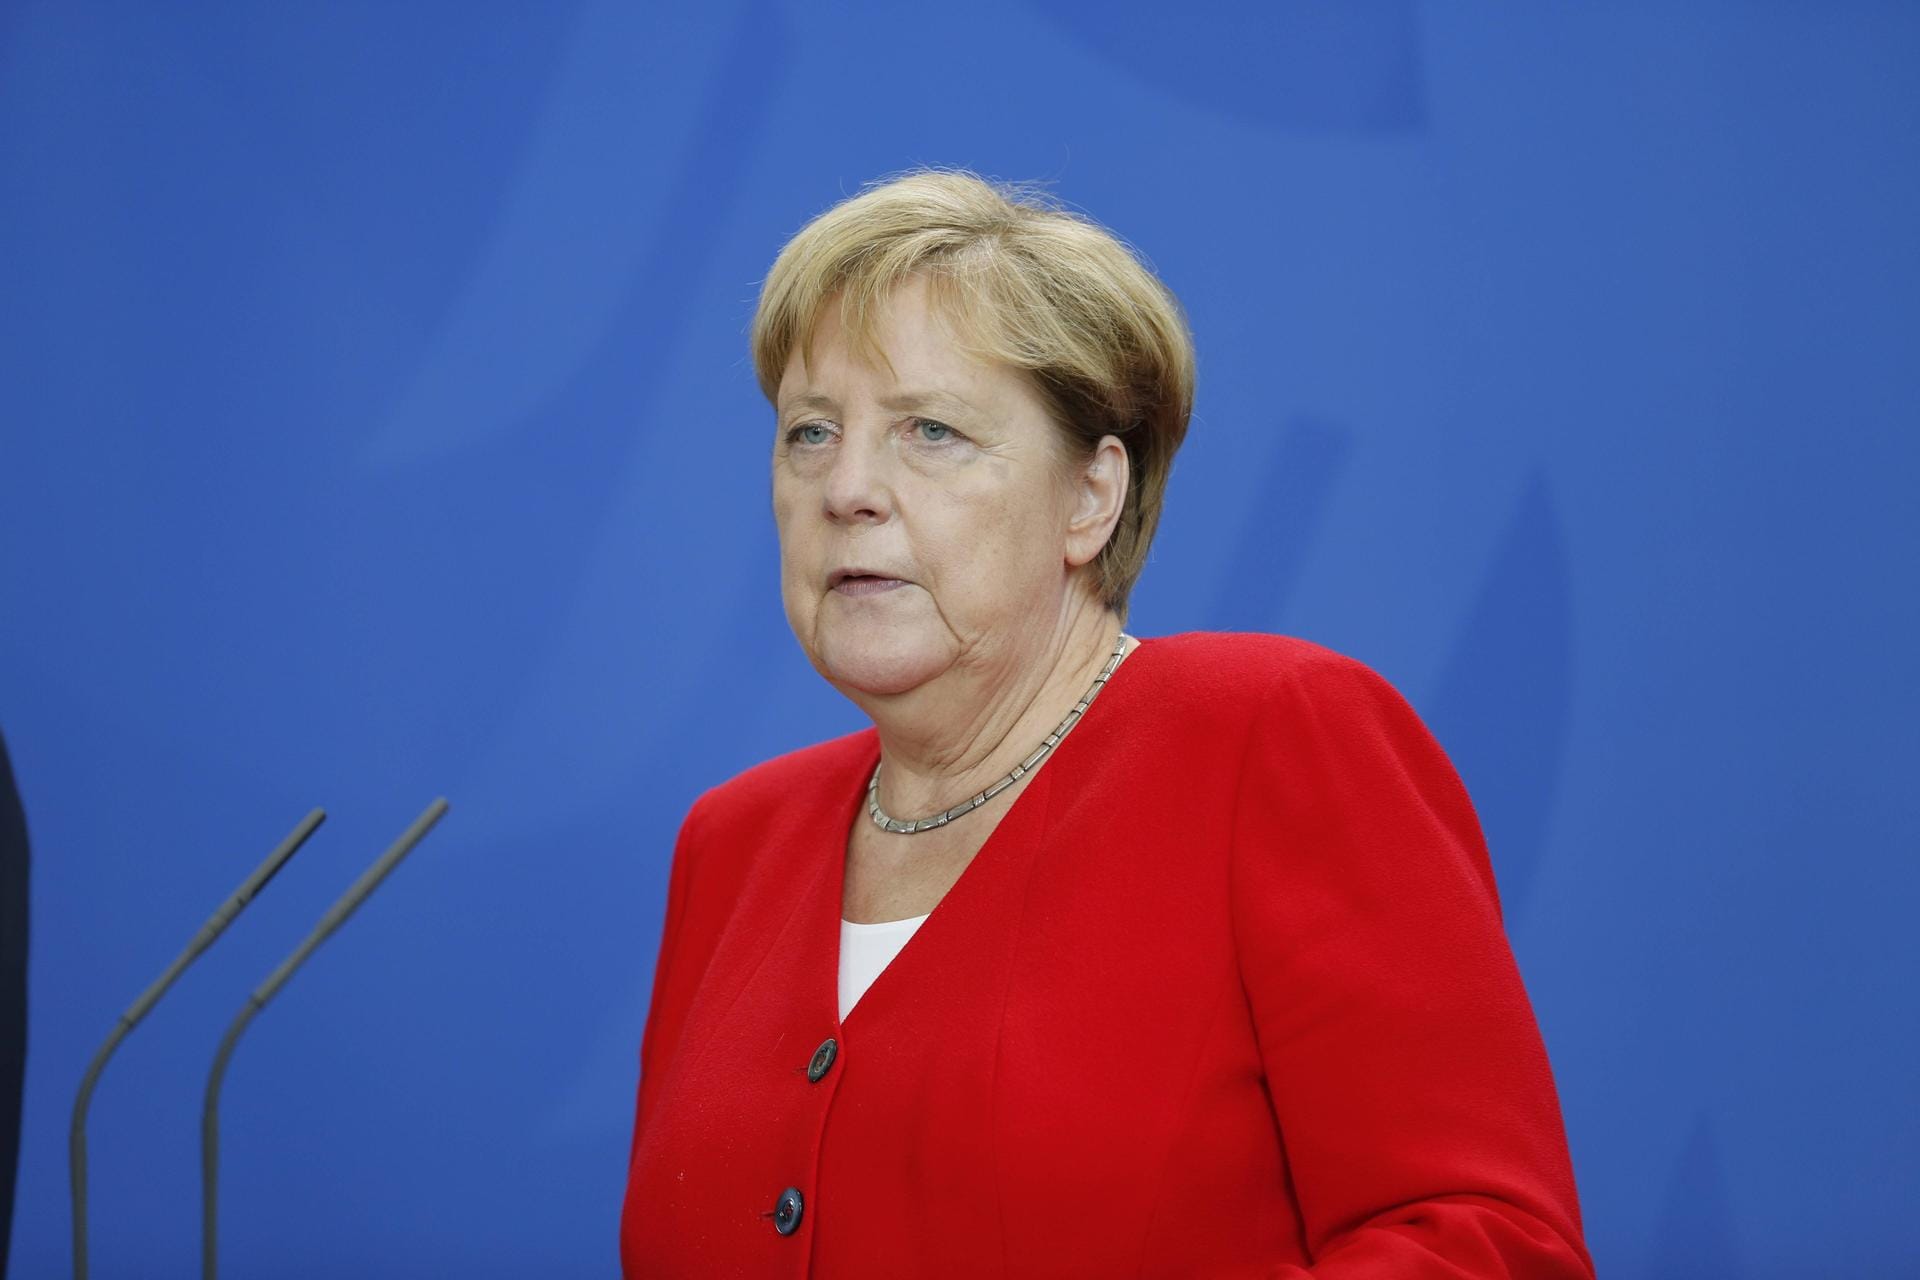 "Die Nachricht von Manuela Schwesigs Krebserkrankung macht mich betroffen", sagte Bundeskanzlerin Angela Merkel. "Ich habe mit ihr telefoniert und ihr von Herzen gewünscht, dass sie wieder ganz gesund wird, dazu Kraft und Zuversicht in dieser schwierigen Zeit."